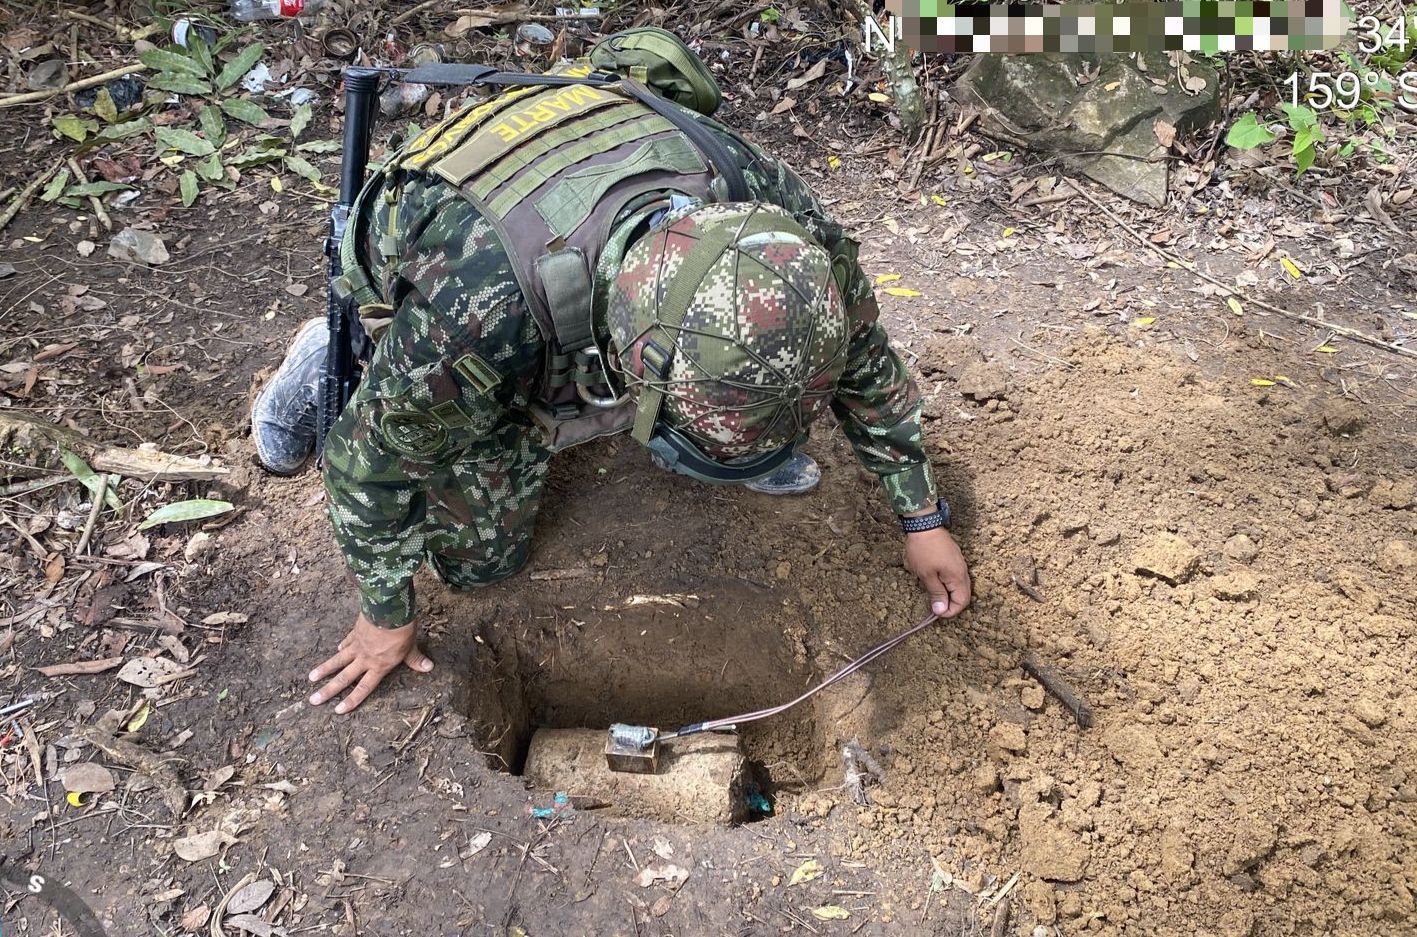 Ejército Nacional en el sur de Bolívar asistió de manera controlada contra artefactos explosivos y tres minas antipersonales.